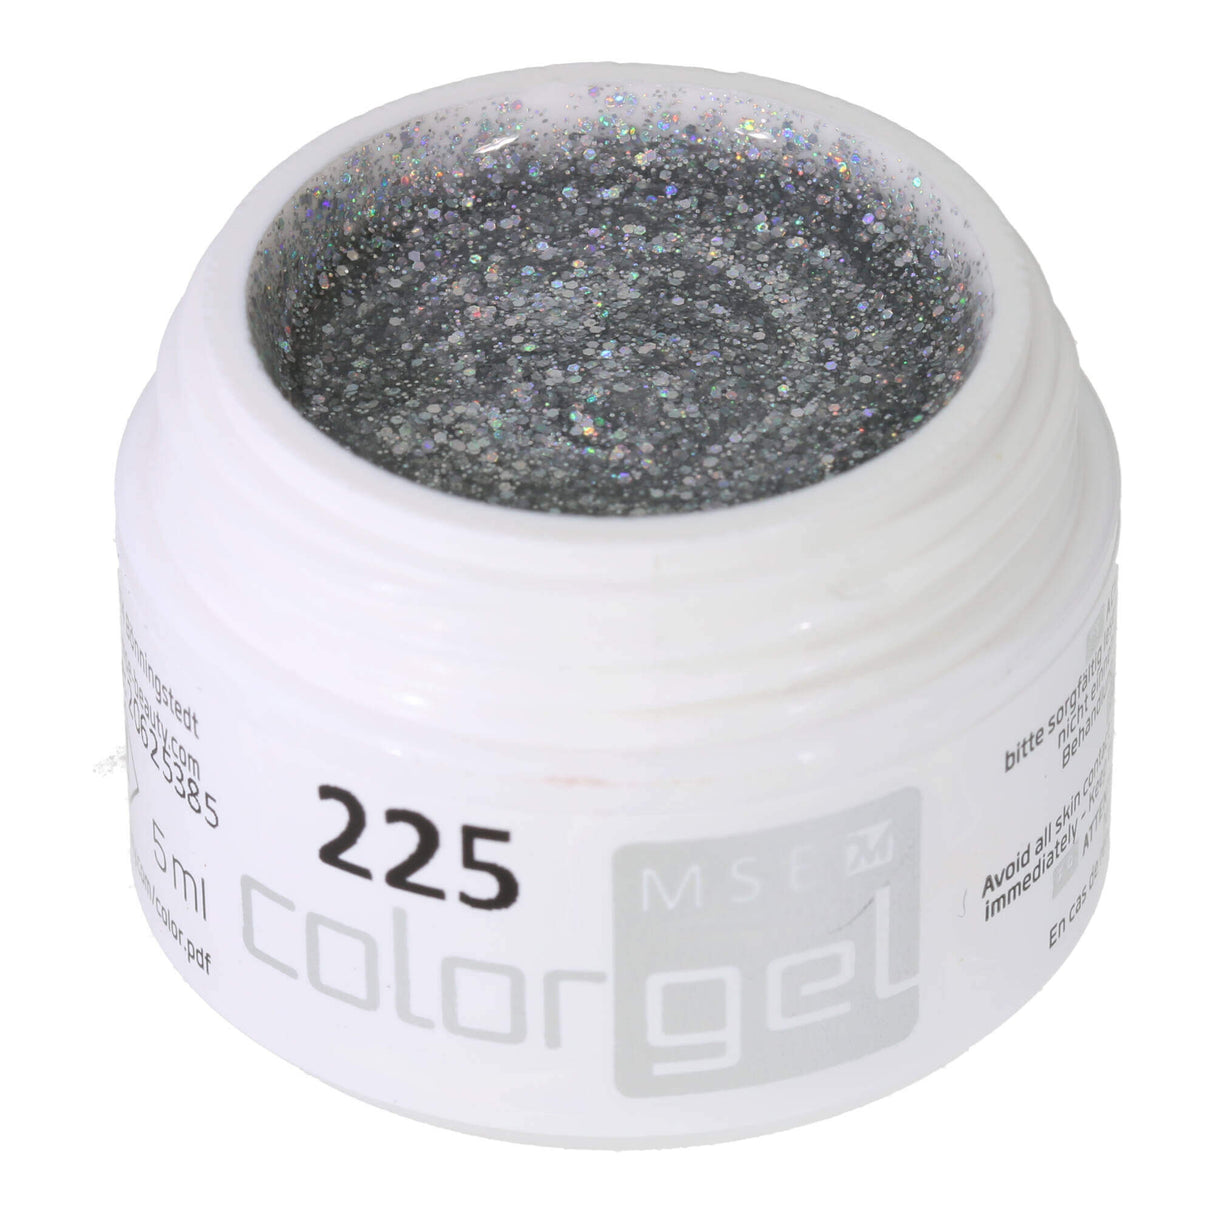 # 225 Premium-GLITTER Color Gel 5ml paillettes argentées avec un très bel effet arc-en-ciel